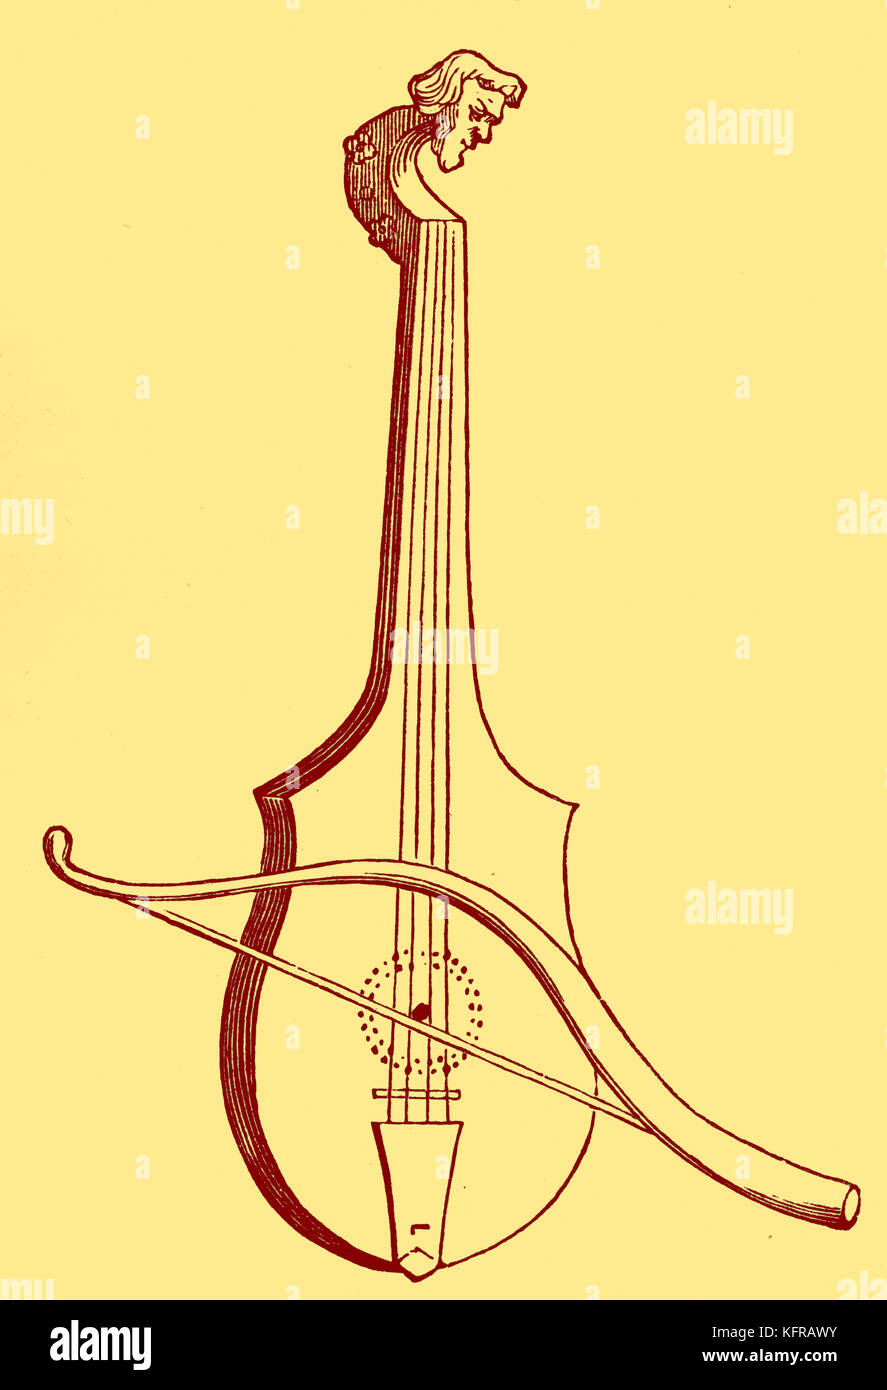 Rebec, aus dem sechzehnten Jahrhundert Abbildung. Die rebec ist ein Neigte string Musikinstrument mit zwischen einem und fünf Saiten. Es war besonders beliebt während des fünfzehnten und sechzehnten Jahrhundert. Stockfoto